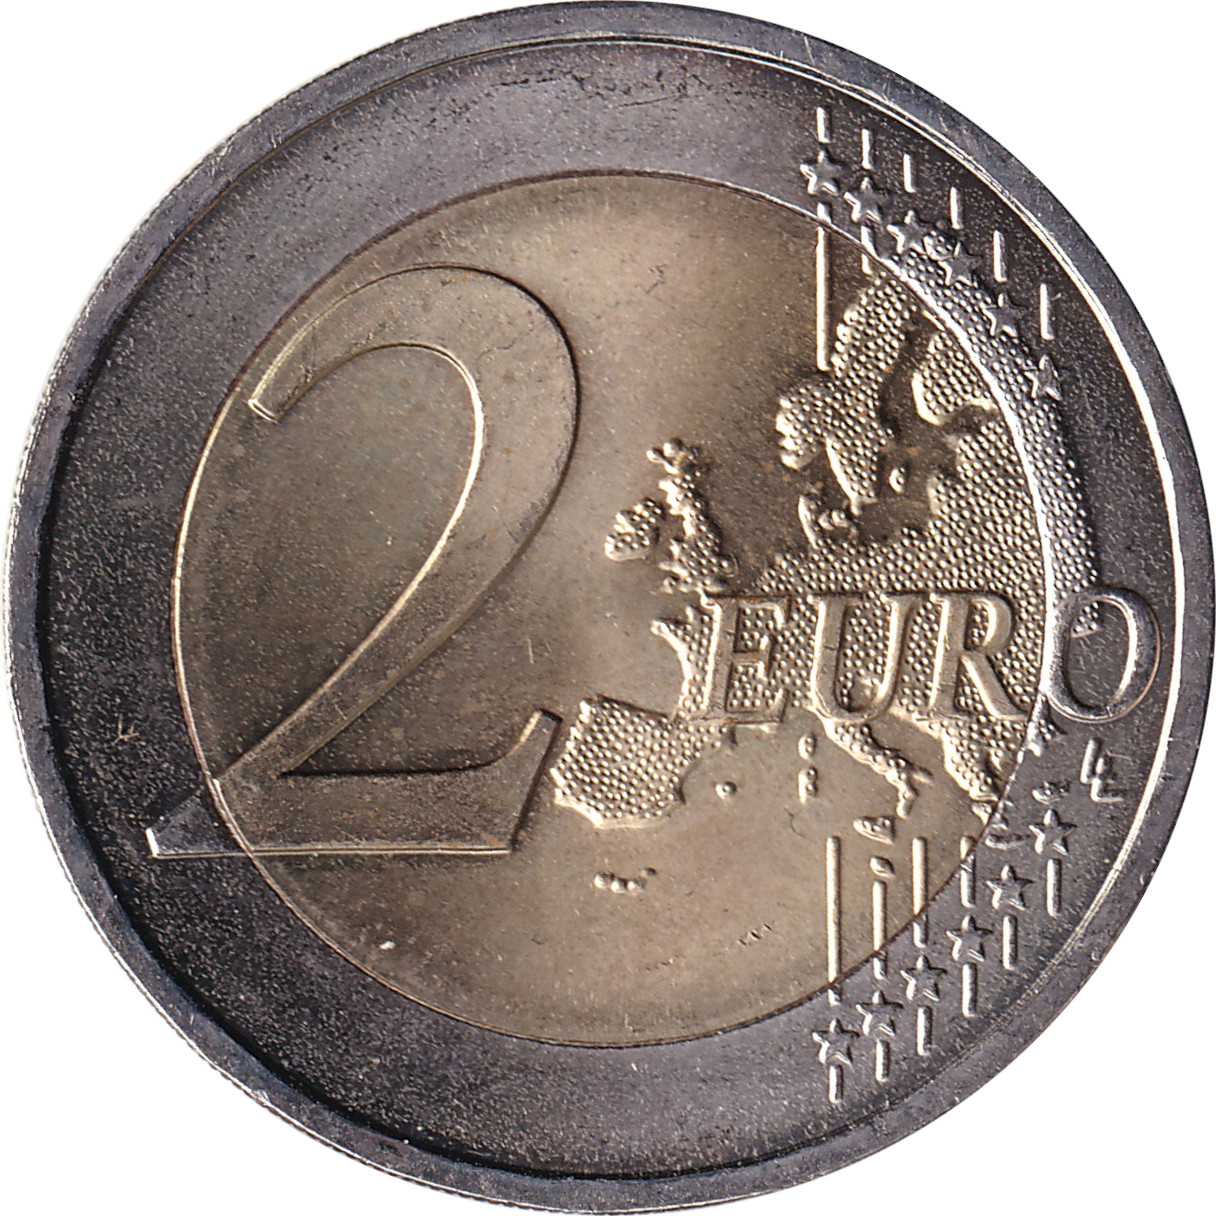 2 euro - Fête de la musique - 30 years